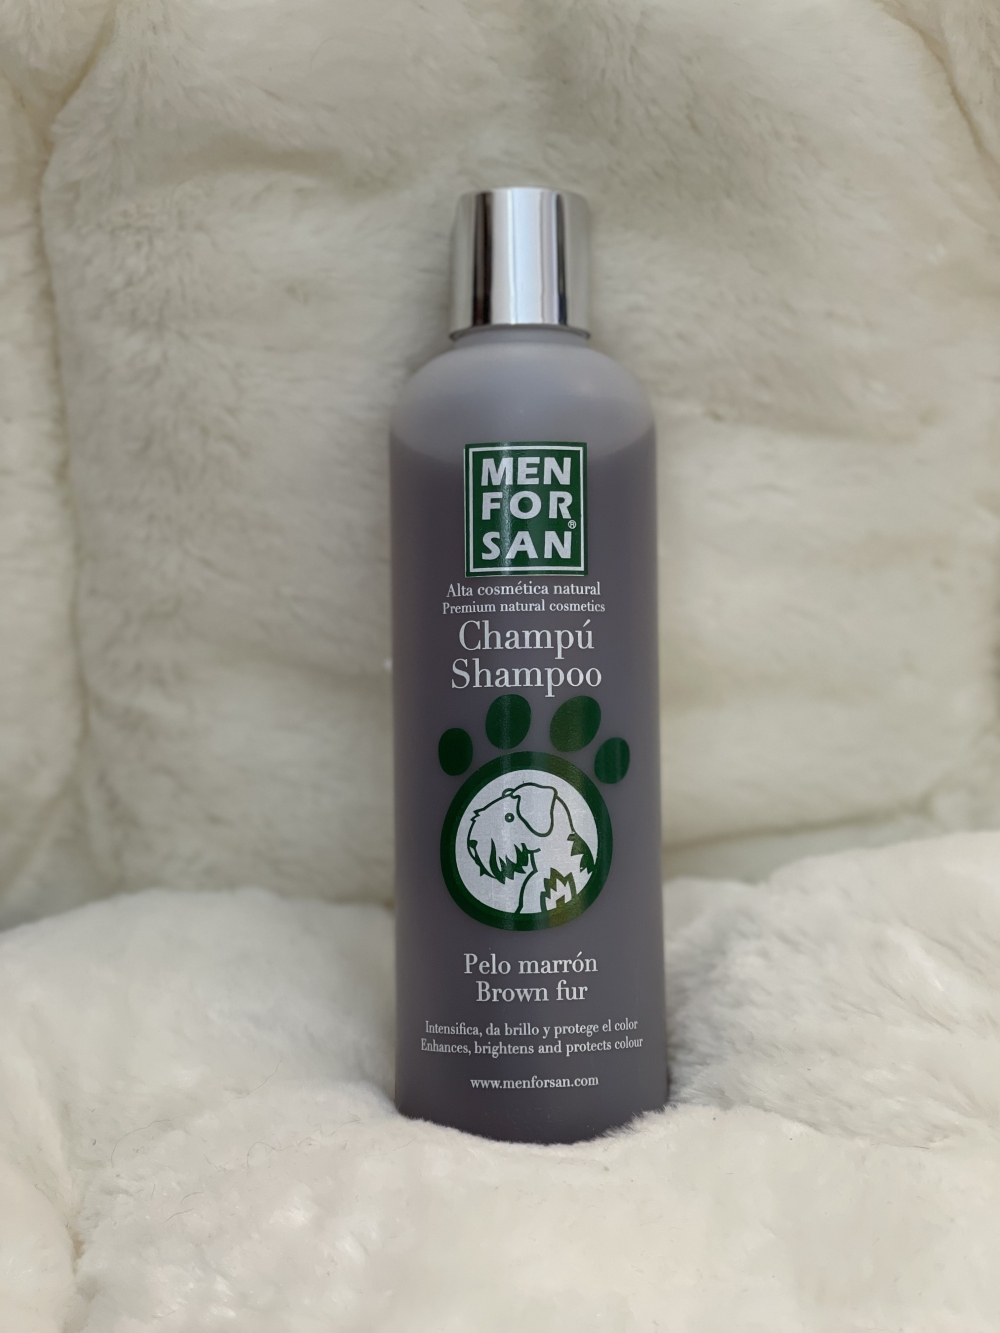 Shampoo av høy kvalitet som forsterker den brune fargen og alle nyanser.